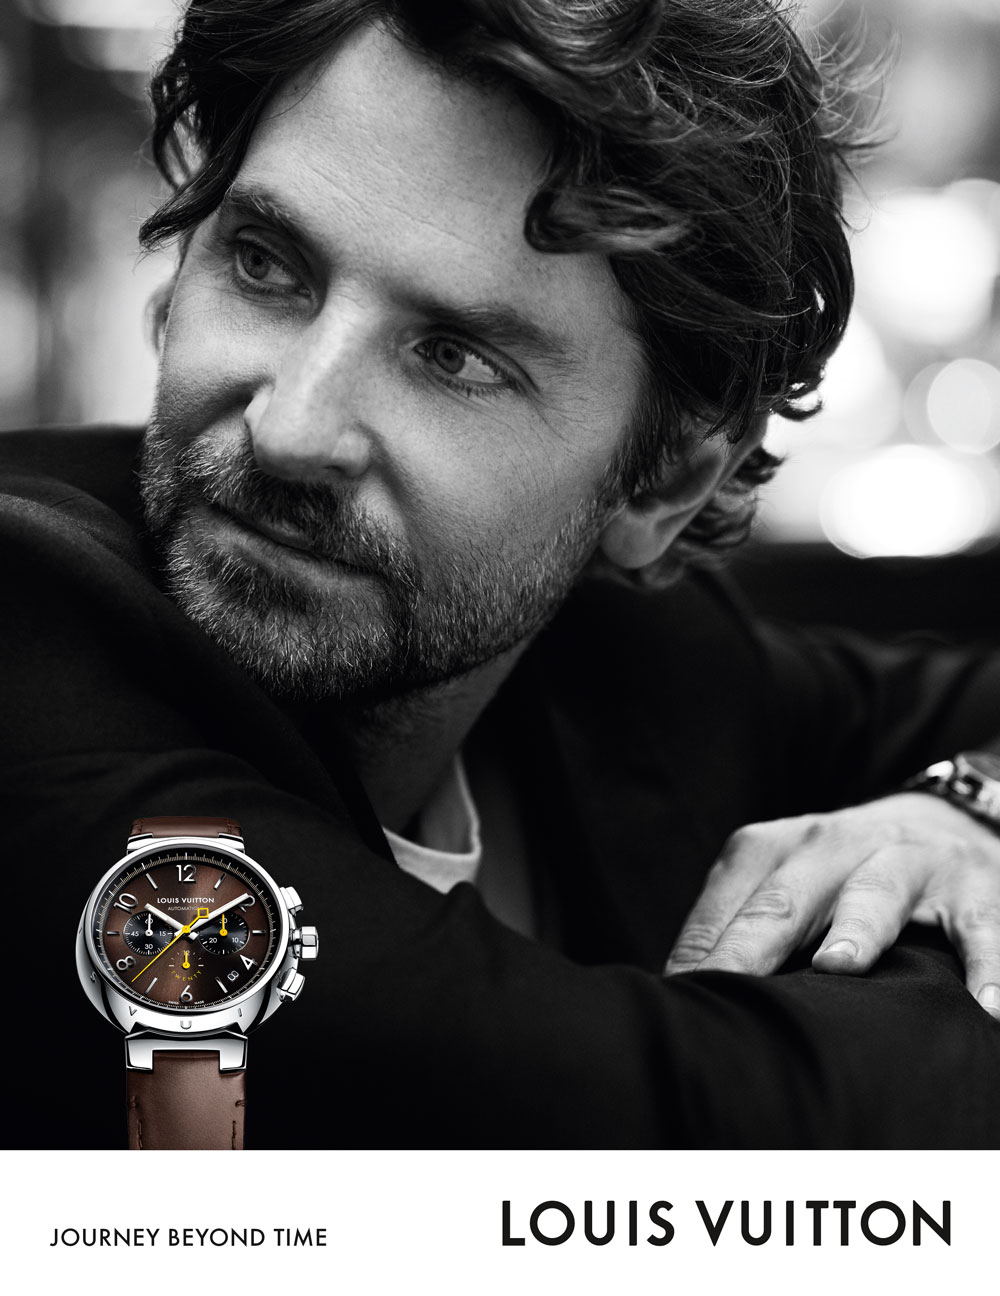 El reloj de Bradley Cooper es Tambour de Louis Vuitton